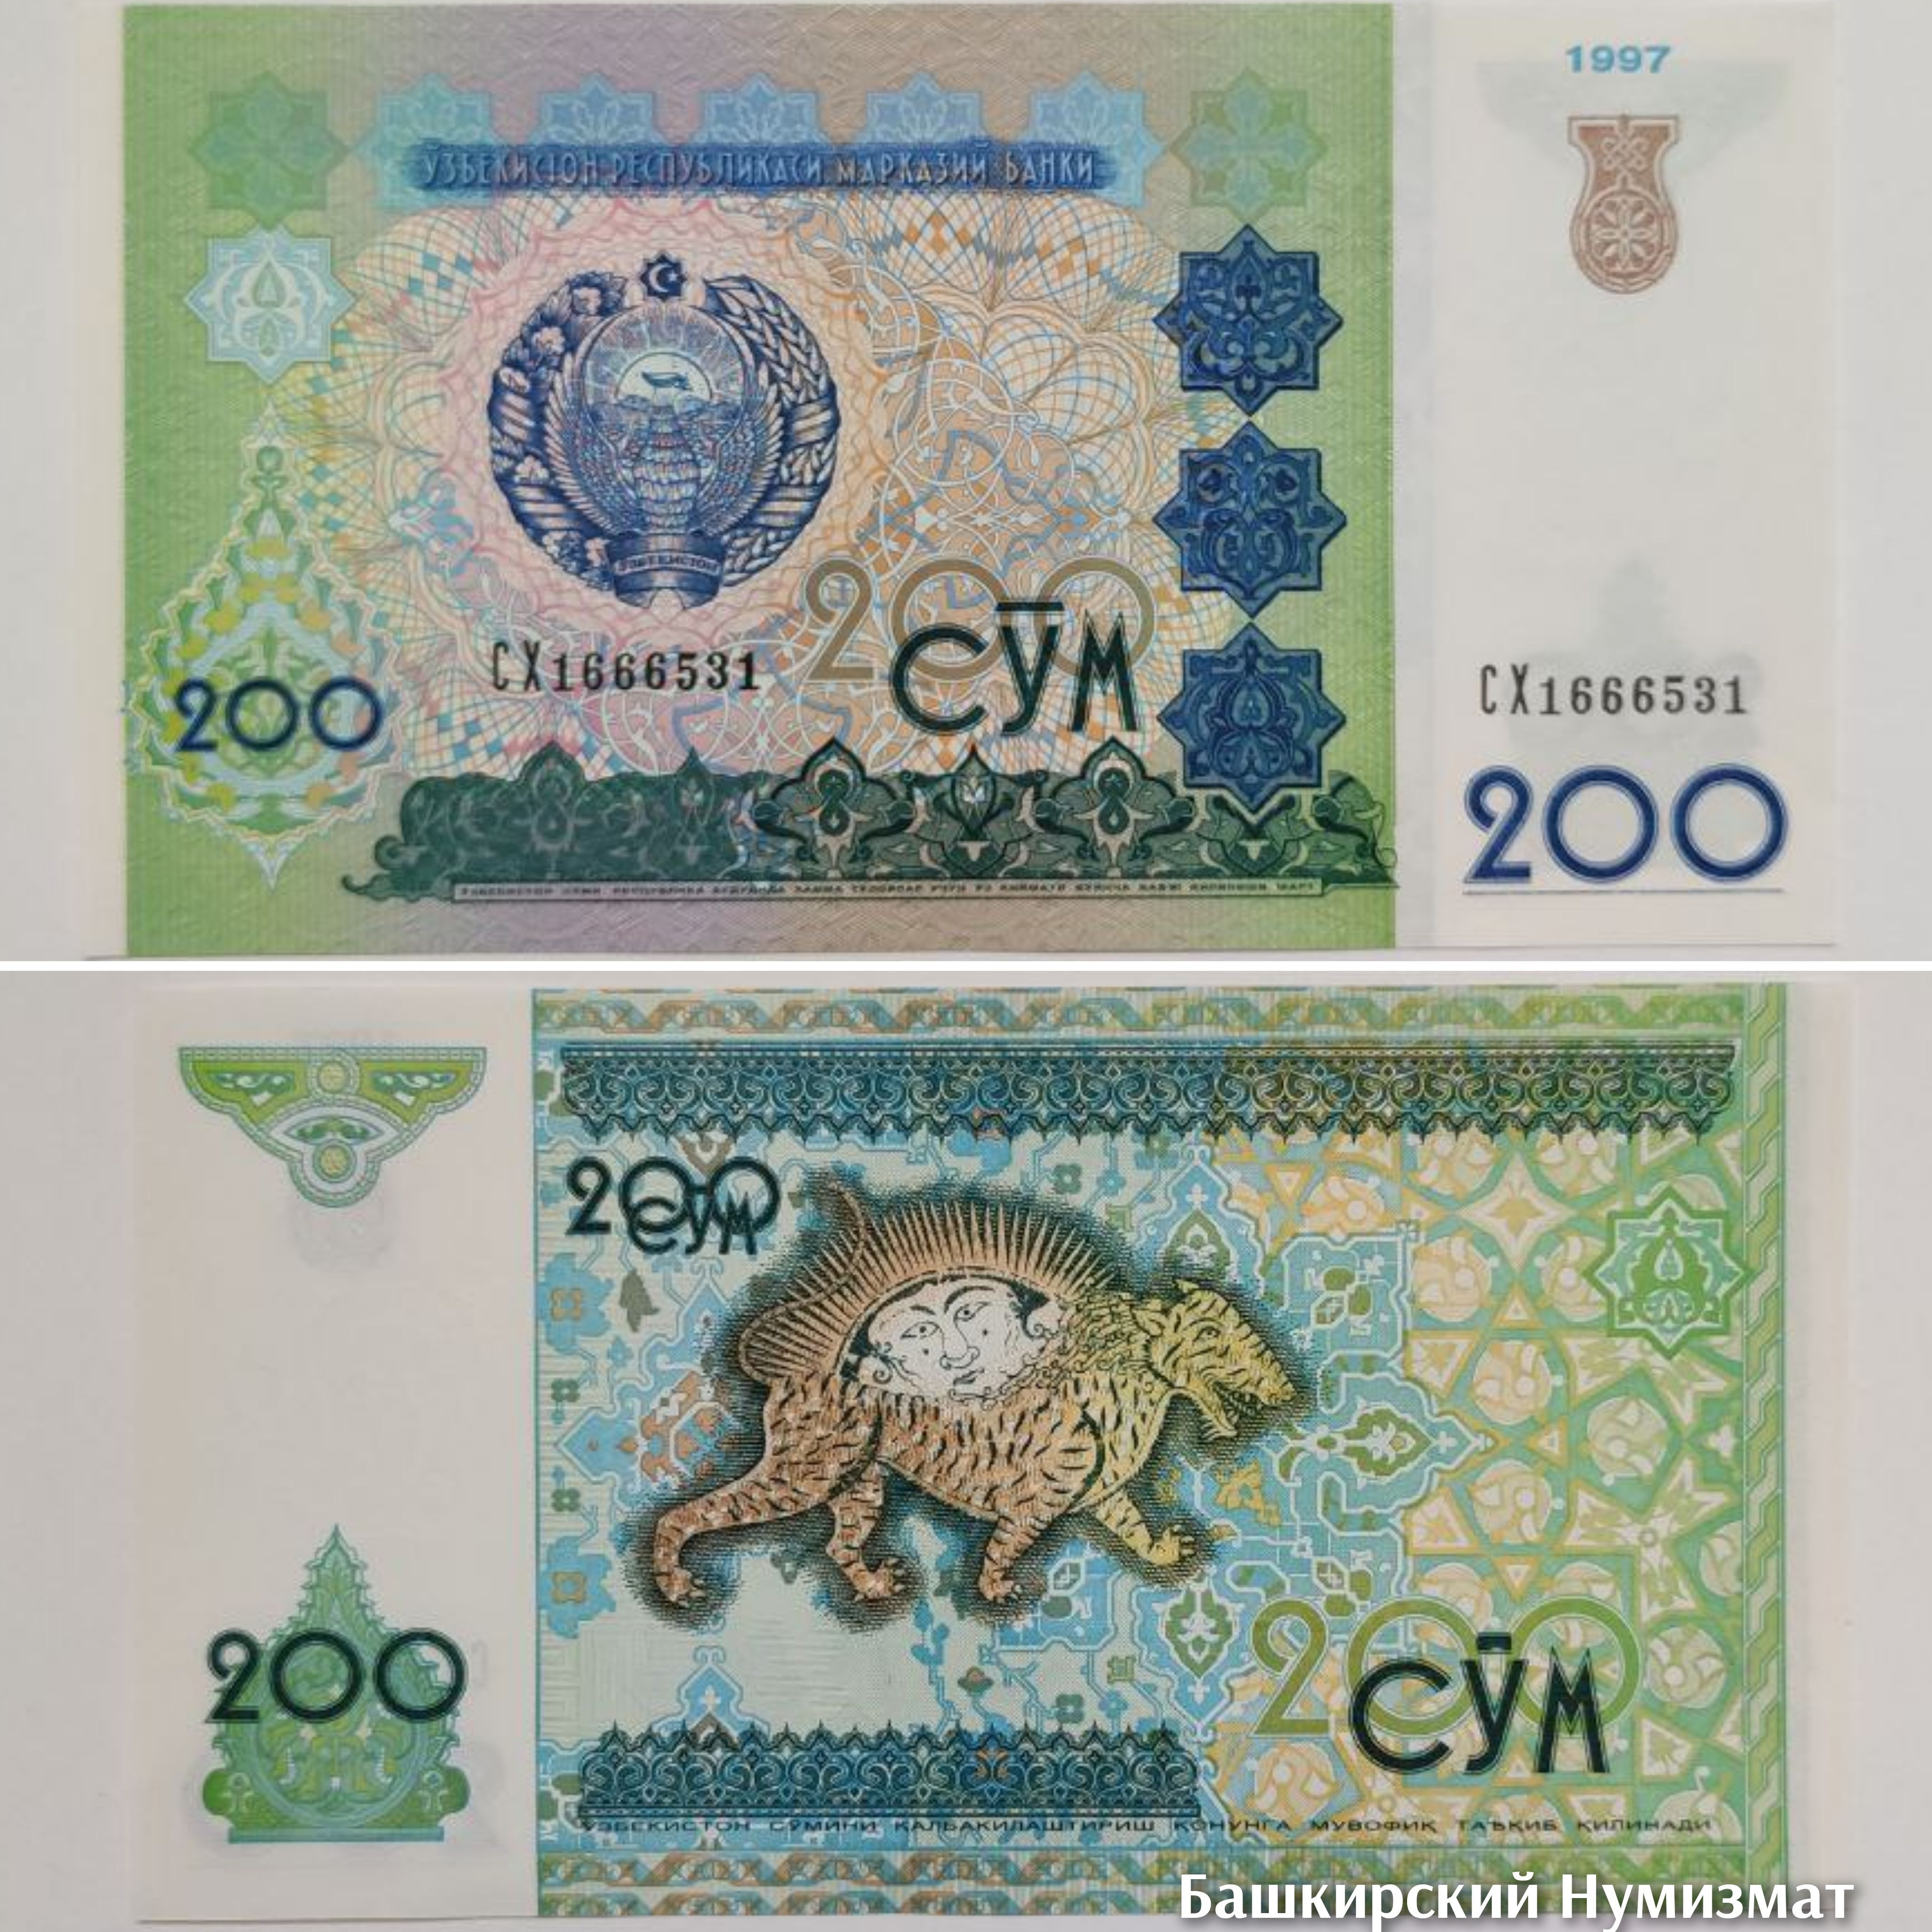 Узбекистан сколько сумма